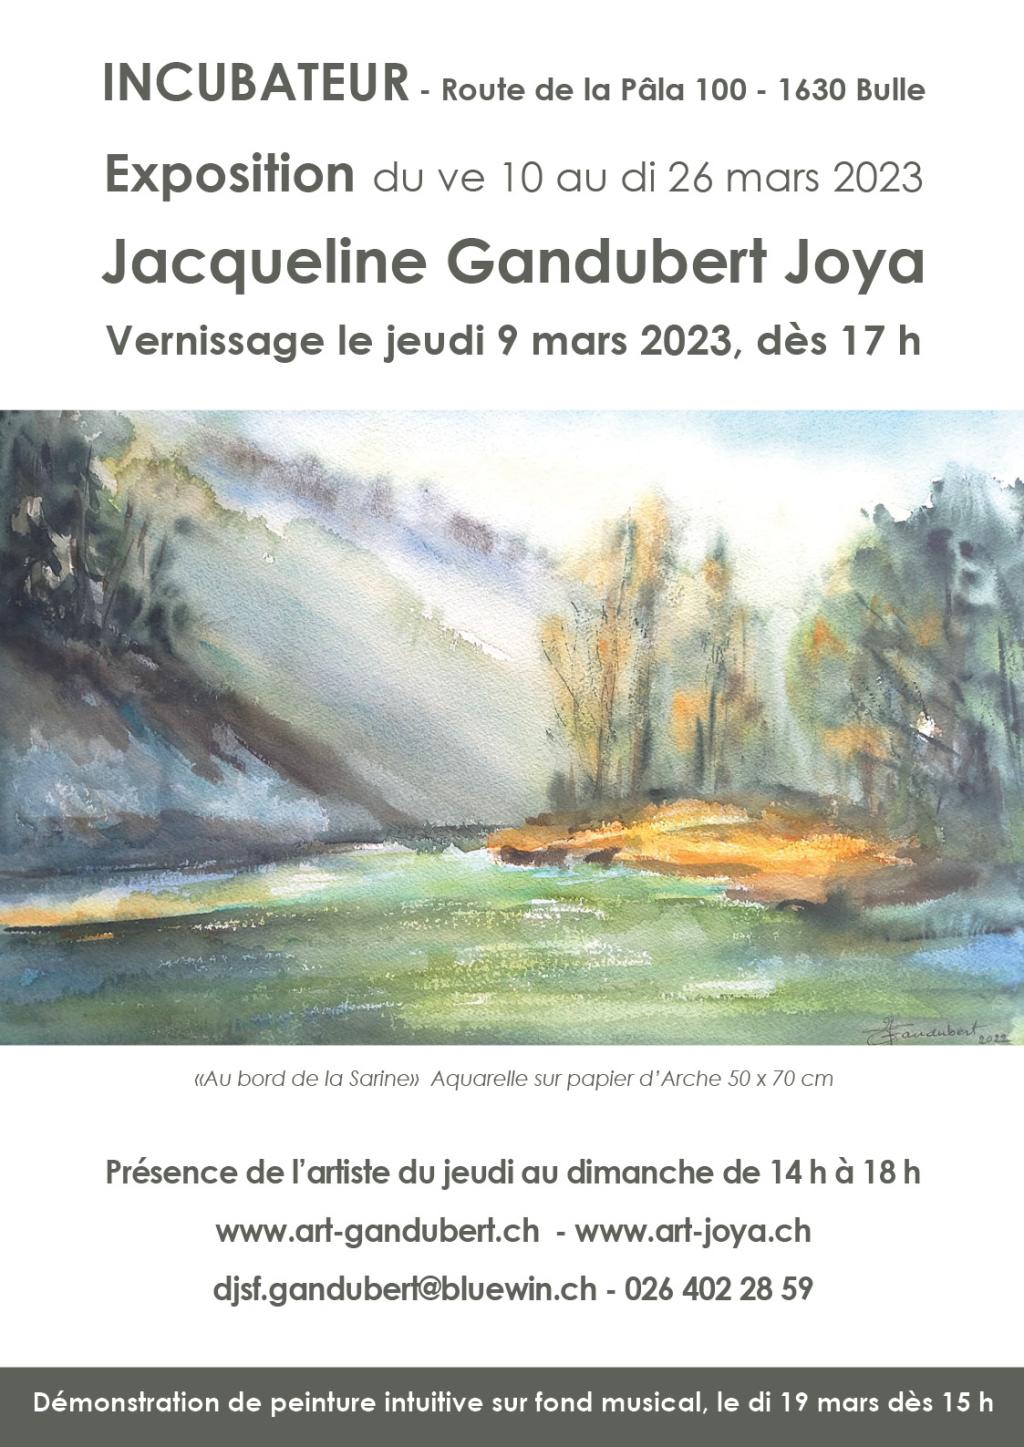 Jacqueline Gandubert Joya